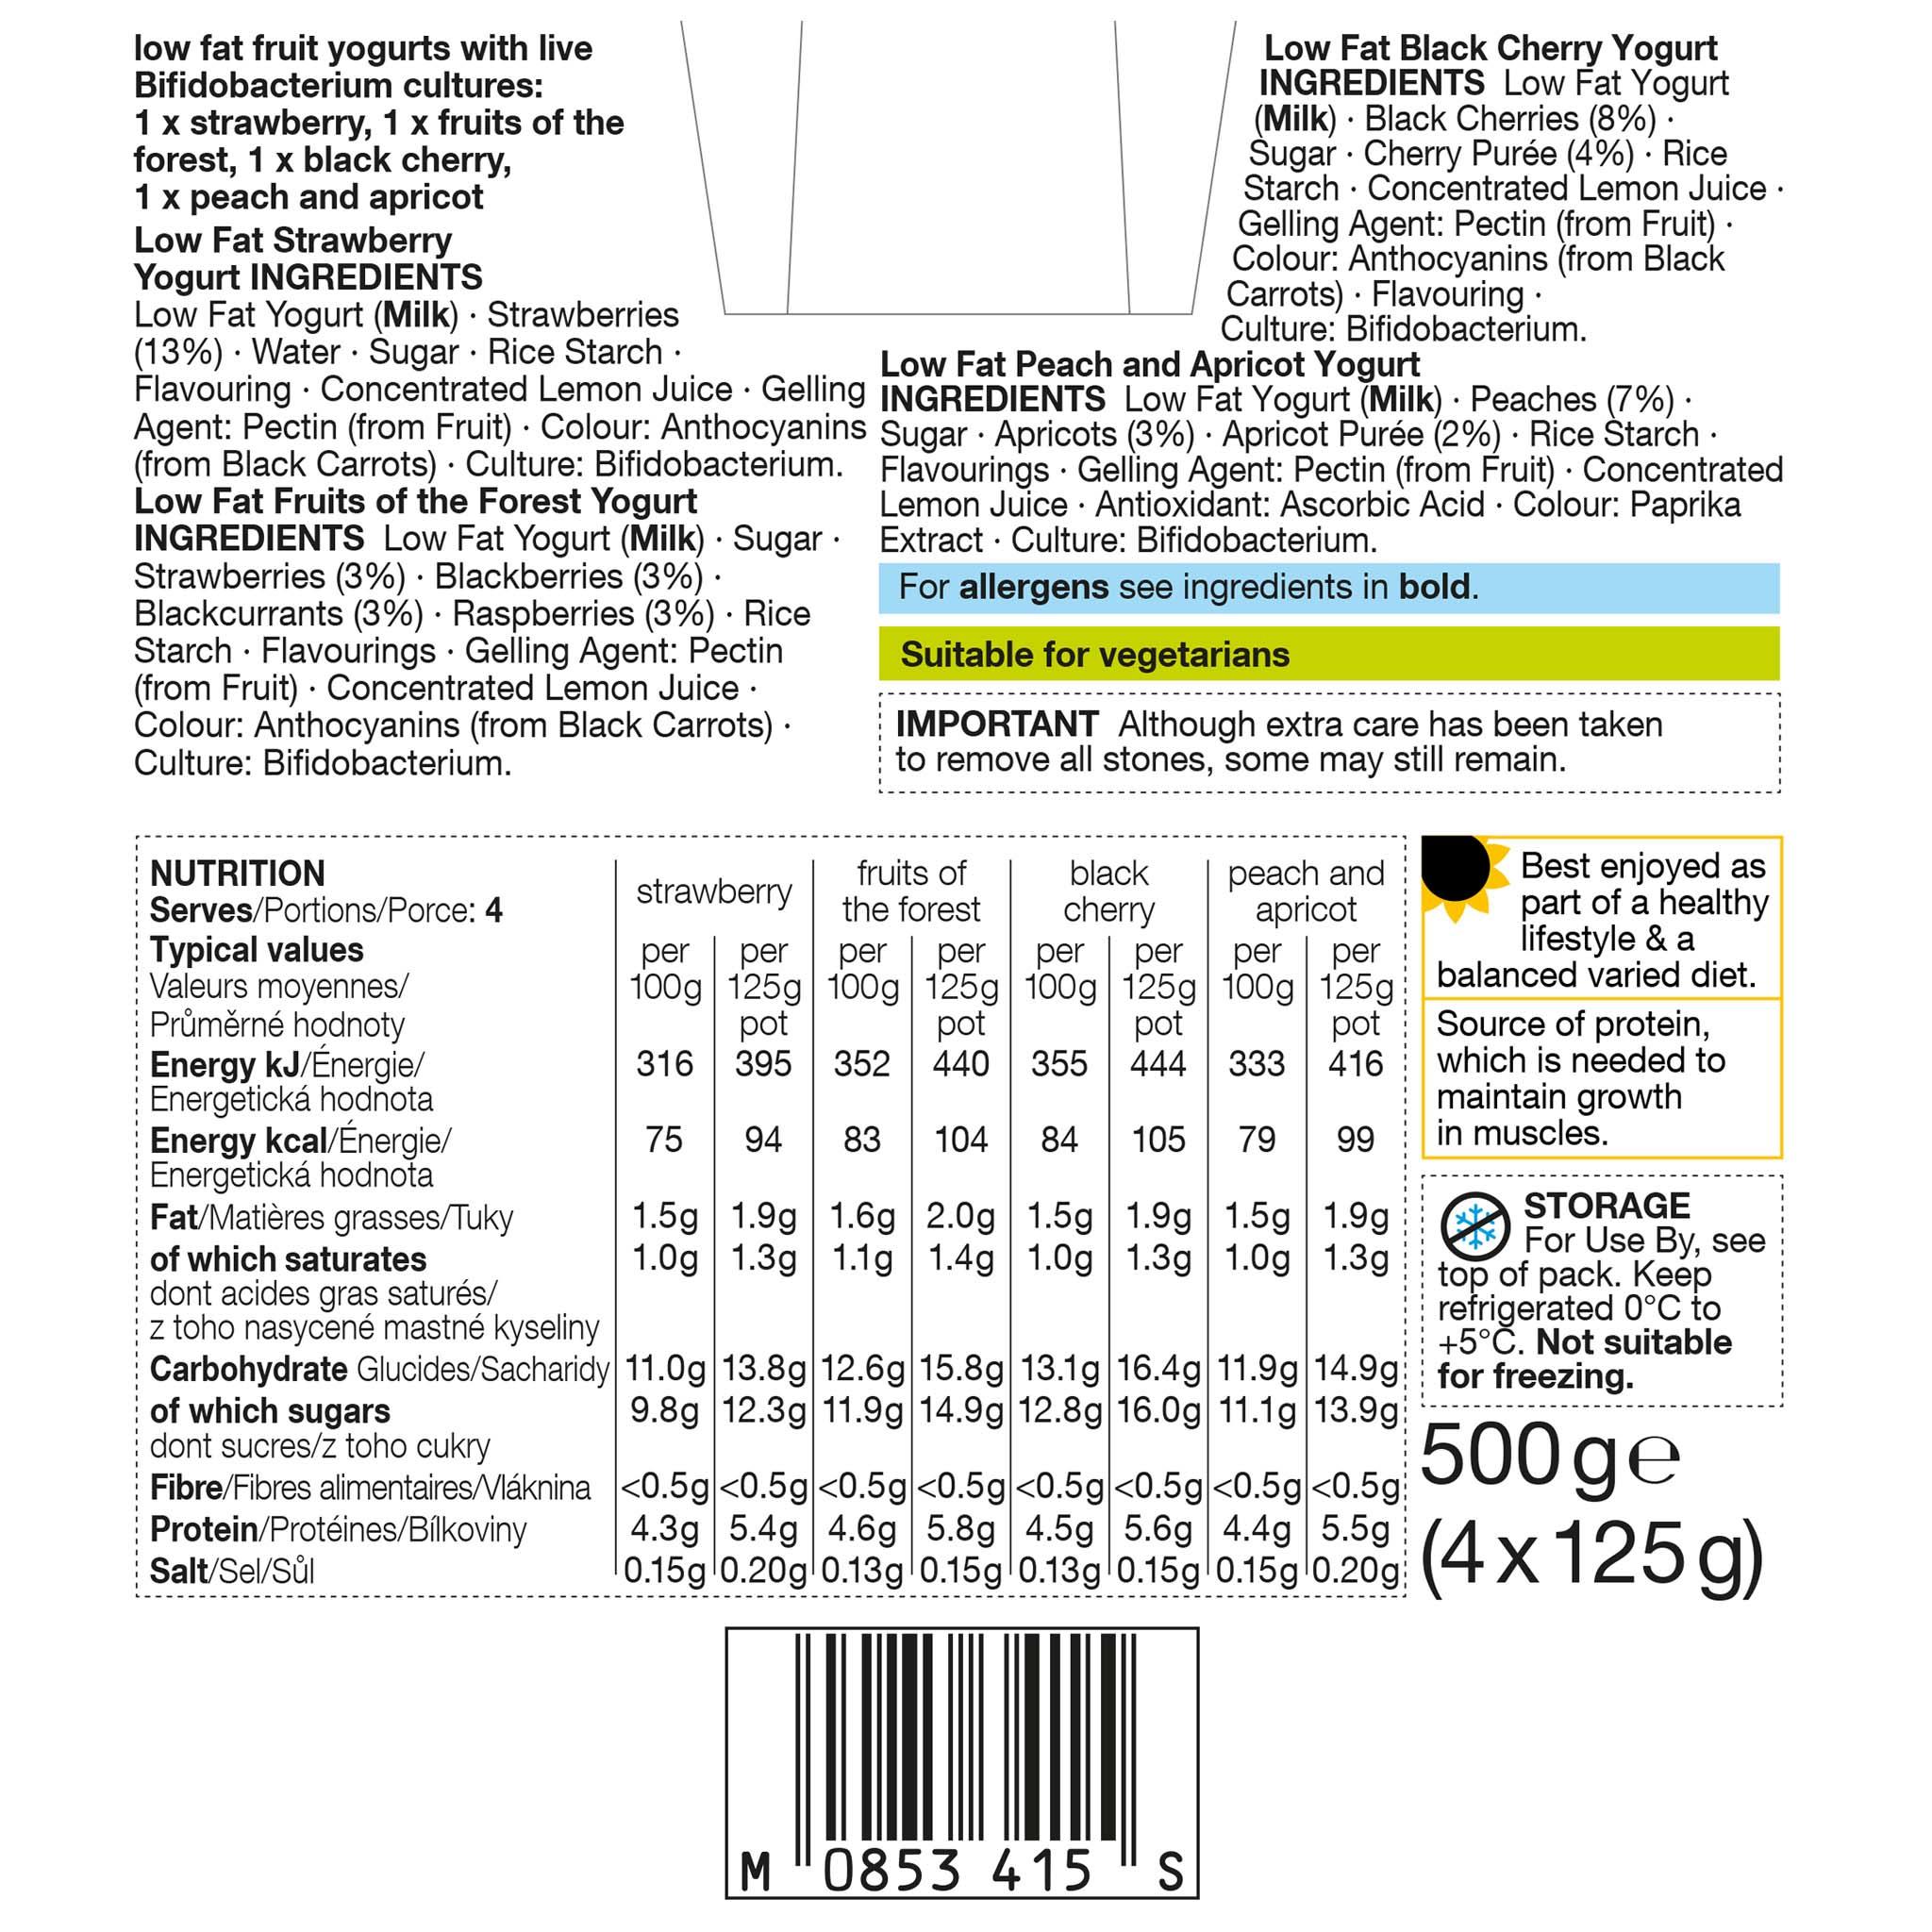 Low Fat Yogurt Multipack Label